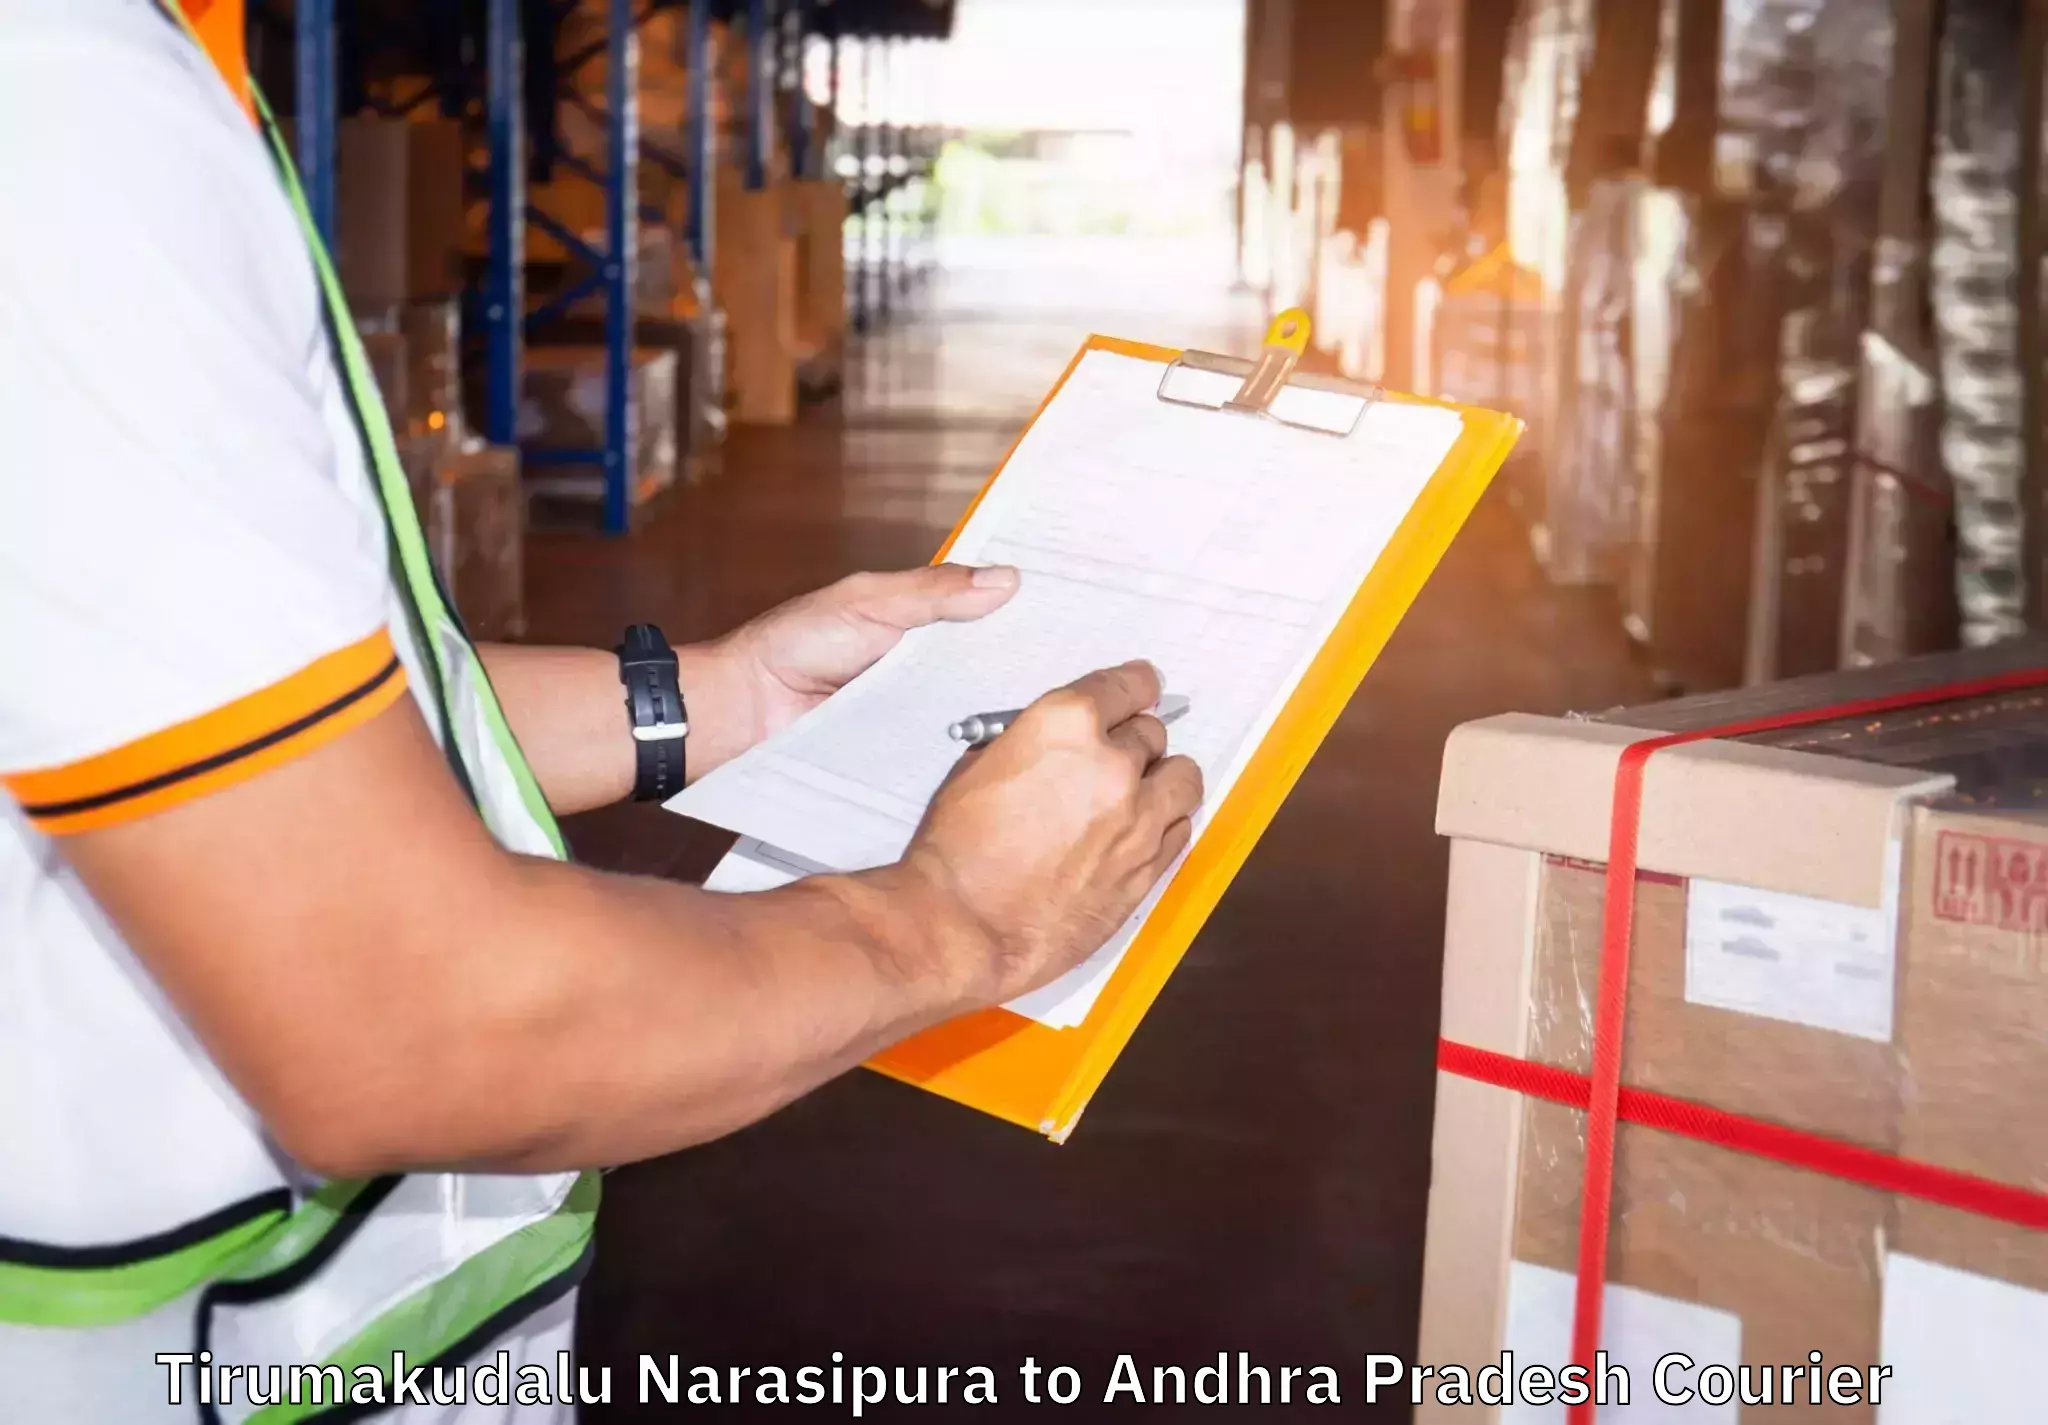 Budget-friendly moving services Tirumakudalu Narasipura to Pamuru